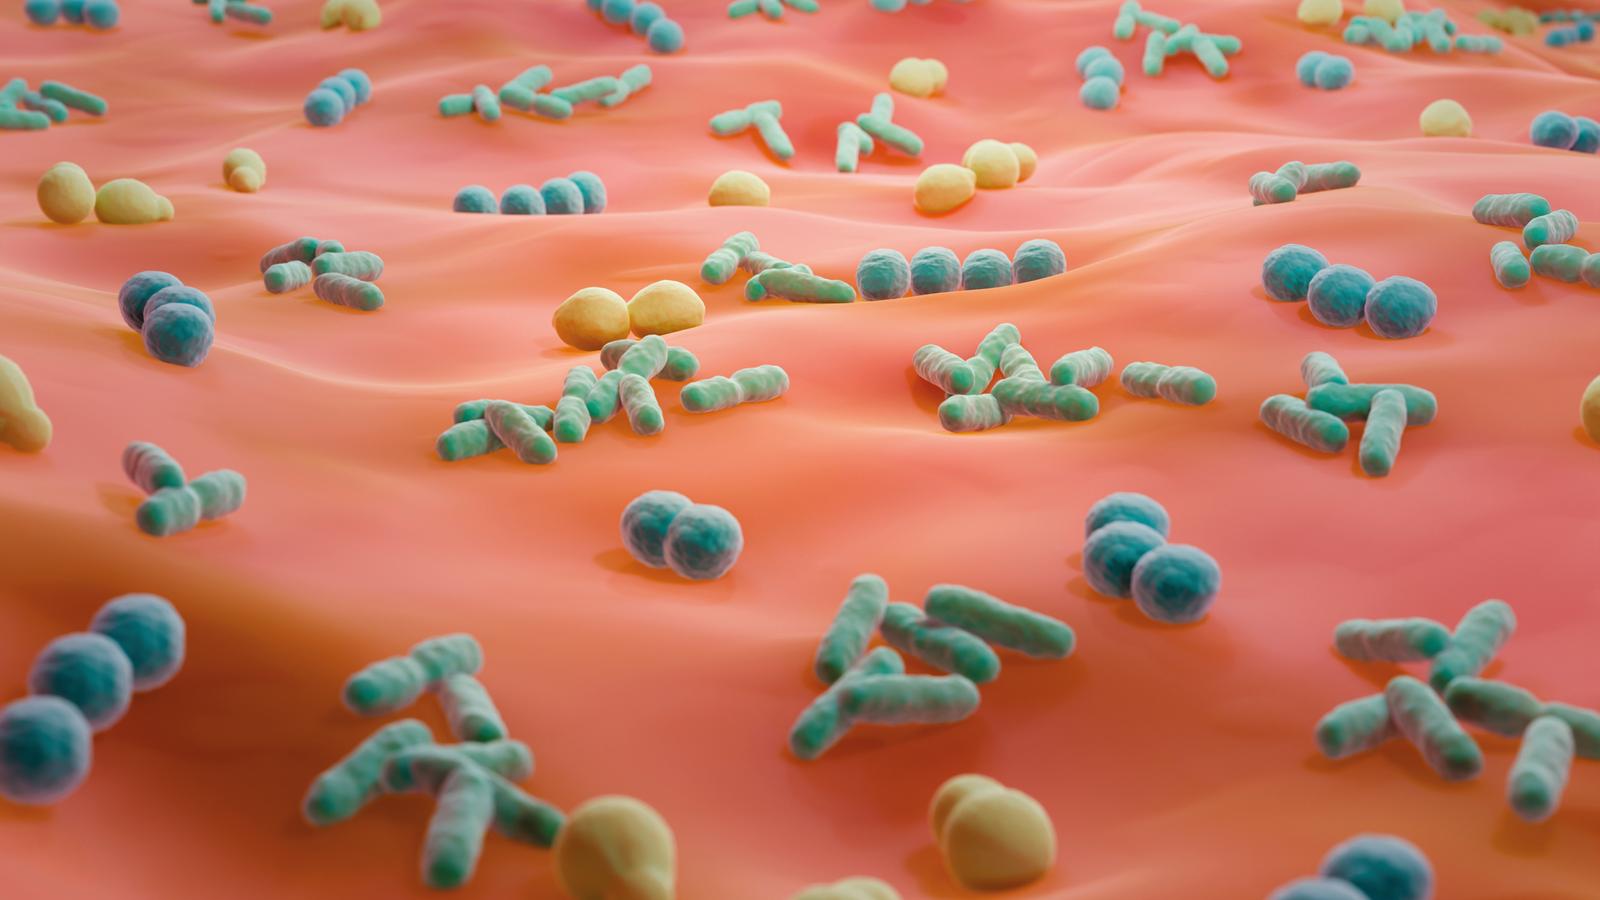 Hautfarbener Stoff auf dem bakterienähnliche Stoffballen liegen